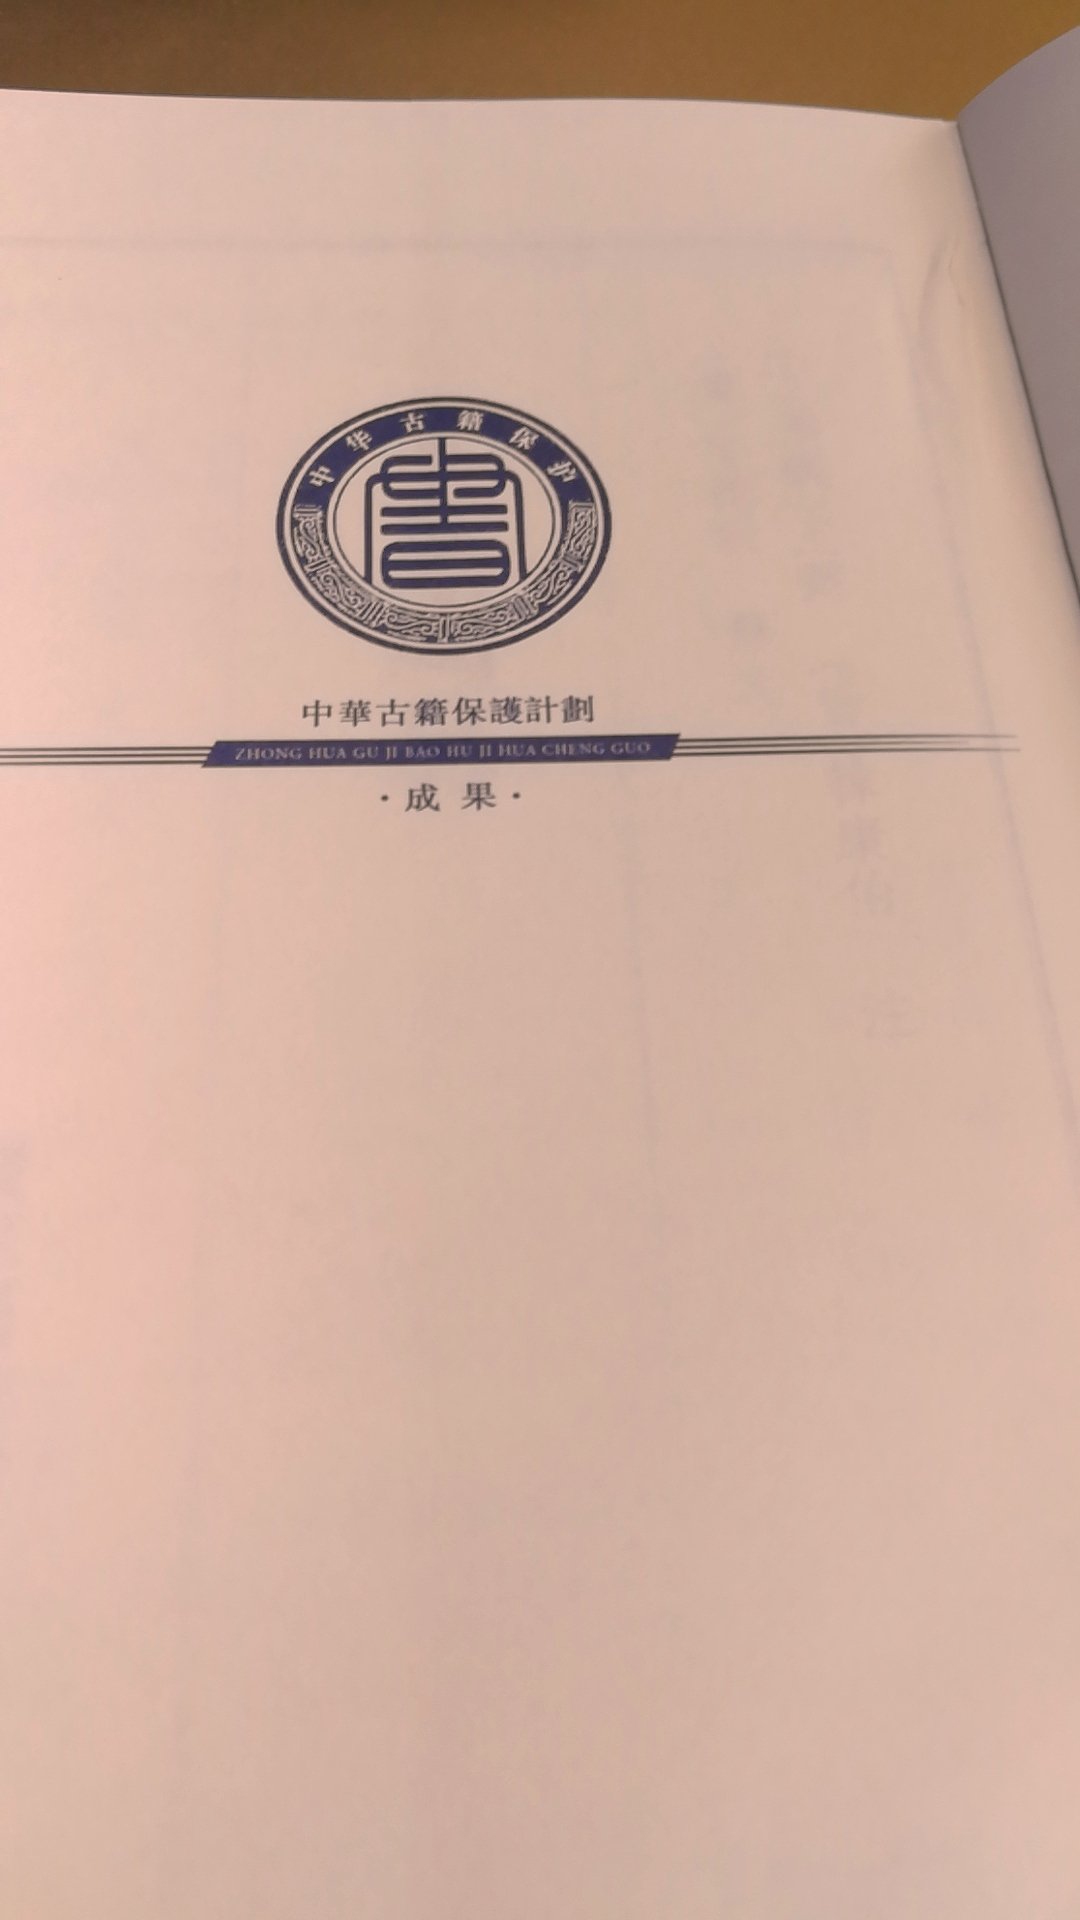 中国国家图书馆这套宋本系列黑白印刷影印，有锁线再胶粘，做书很良心，印刷精美，纸张也好，值得收入！